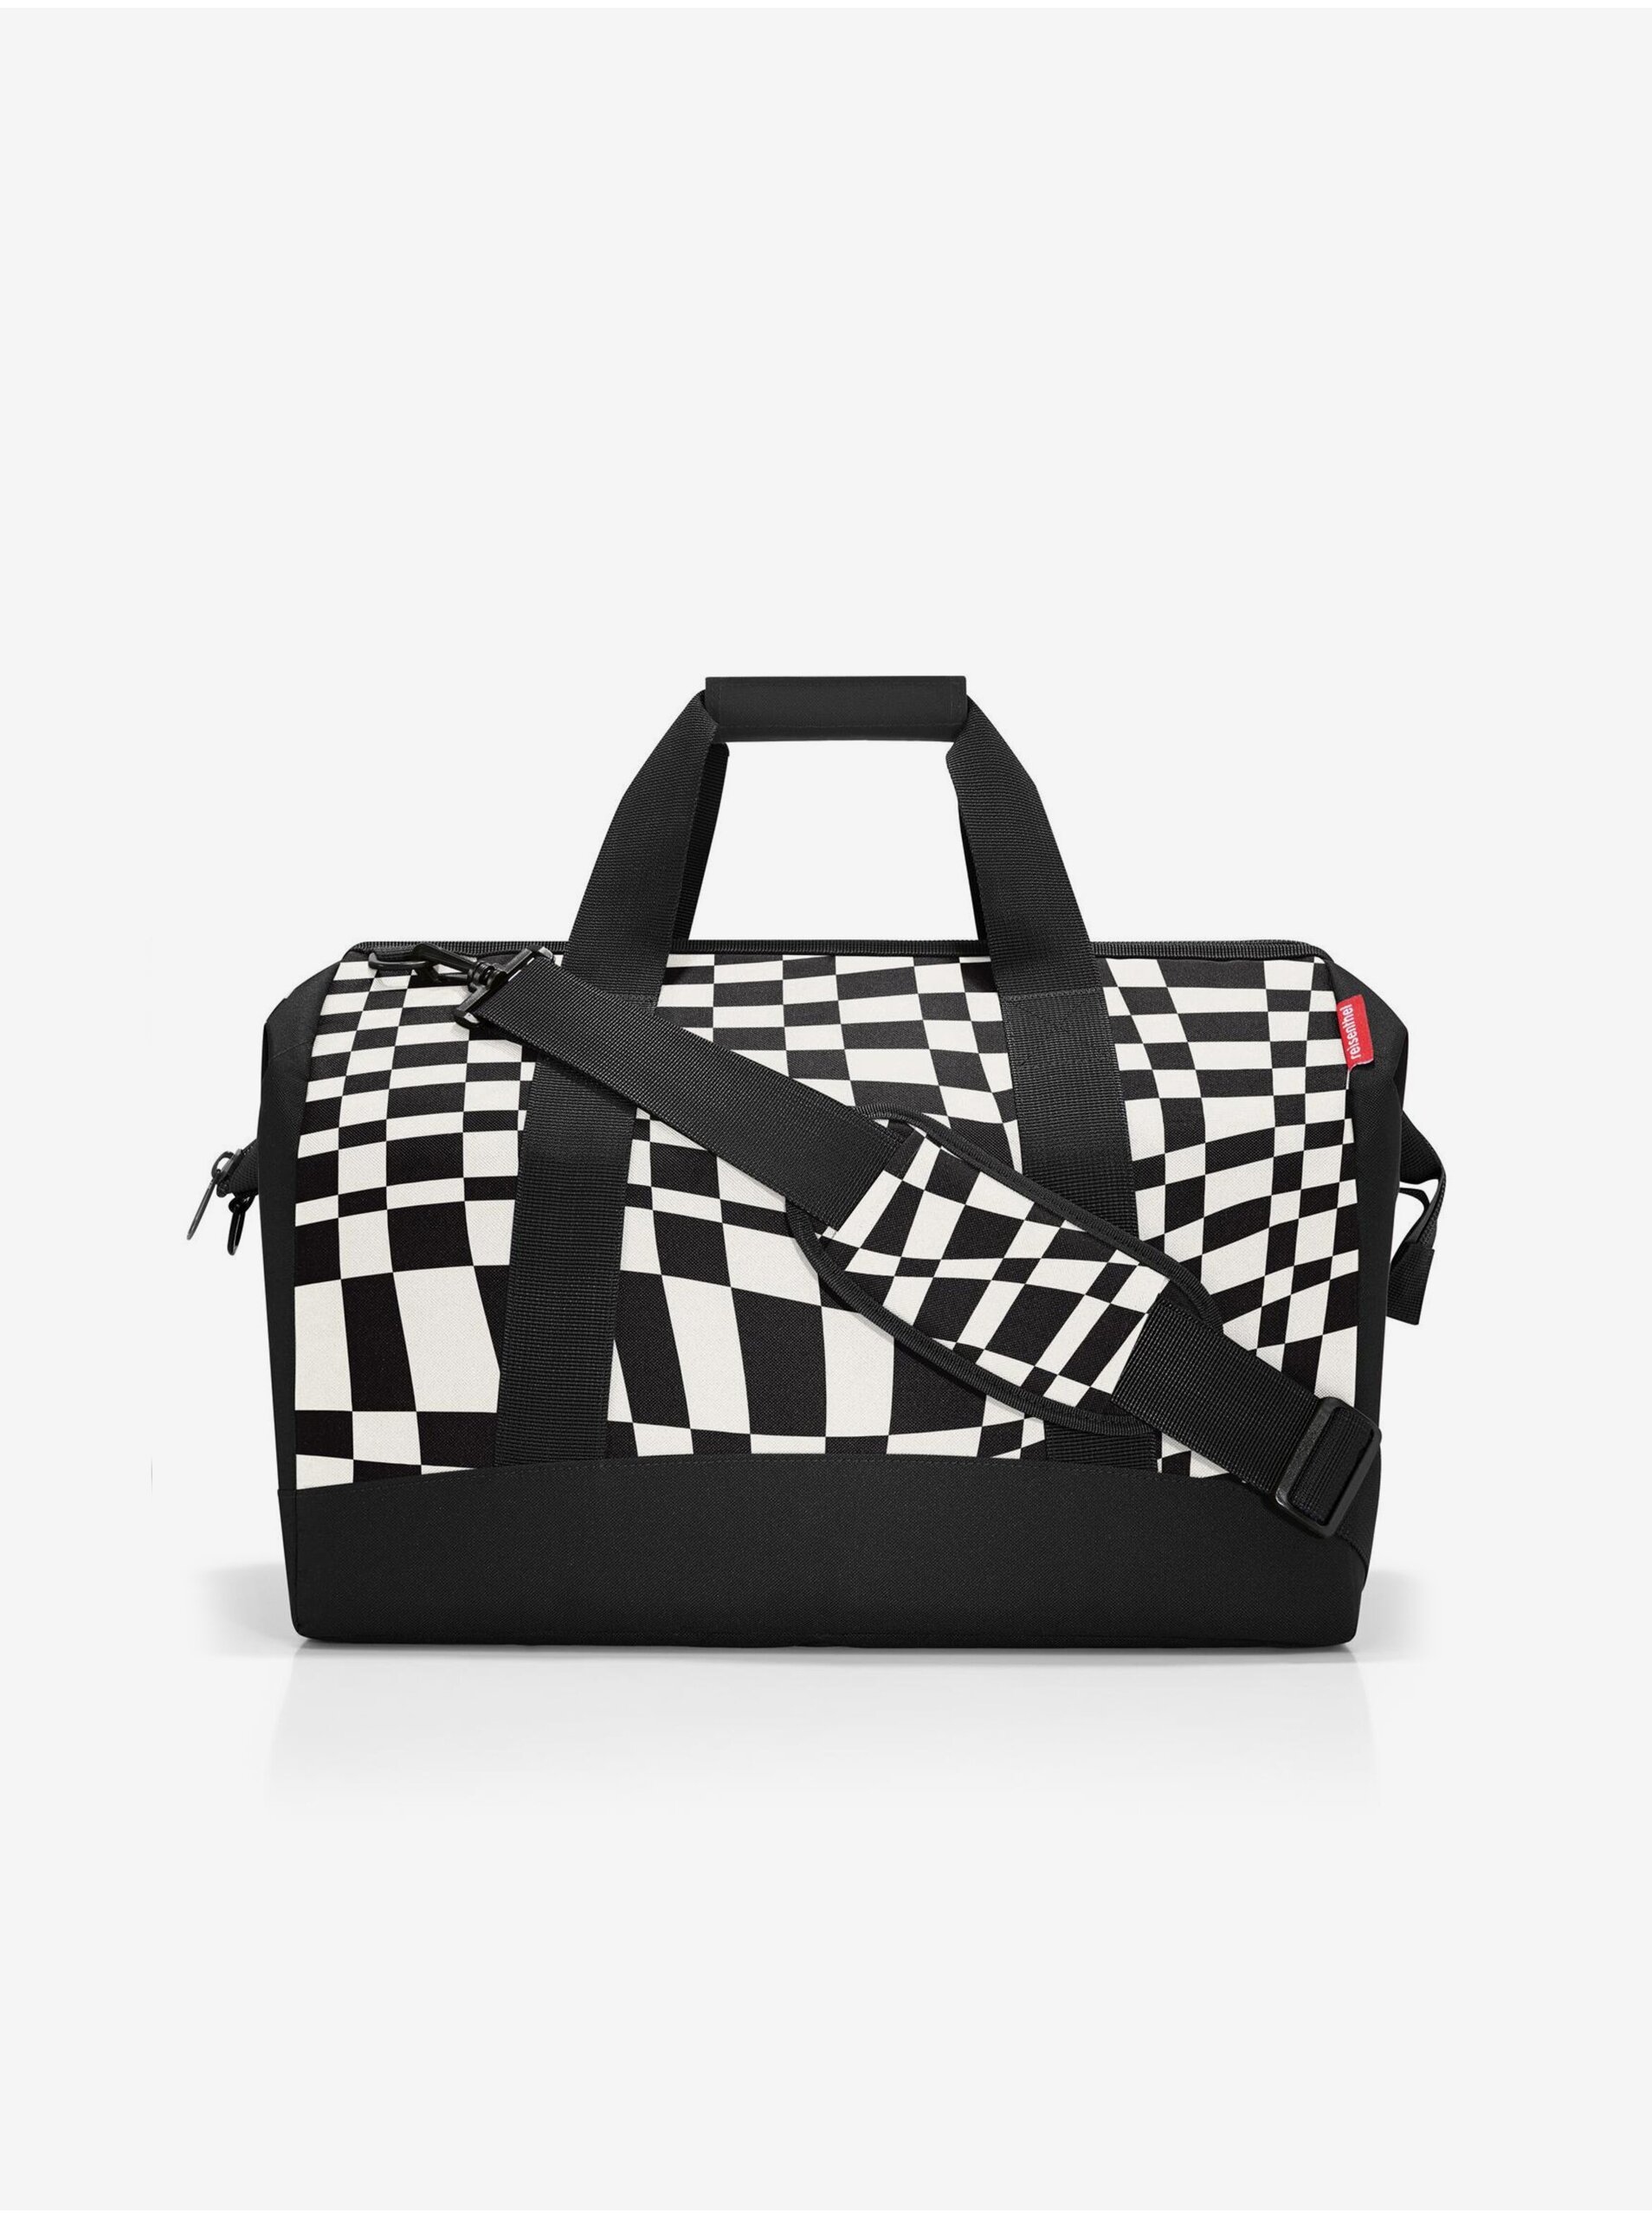 E-shop Bílo-černá vzorovaná cestovní taška Reisenthel Allrounder L Op-Art